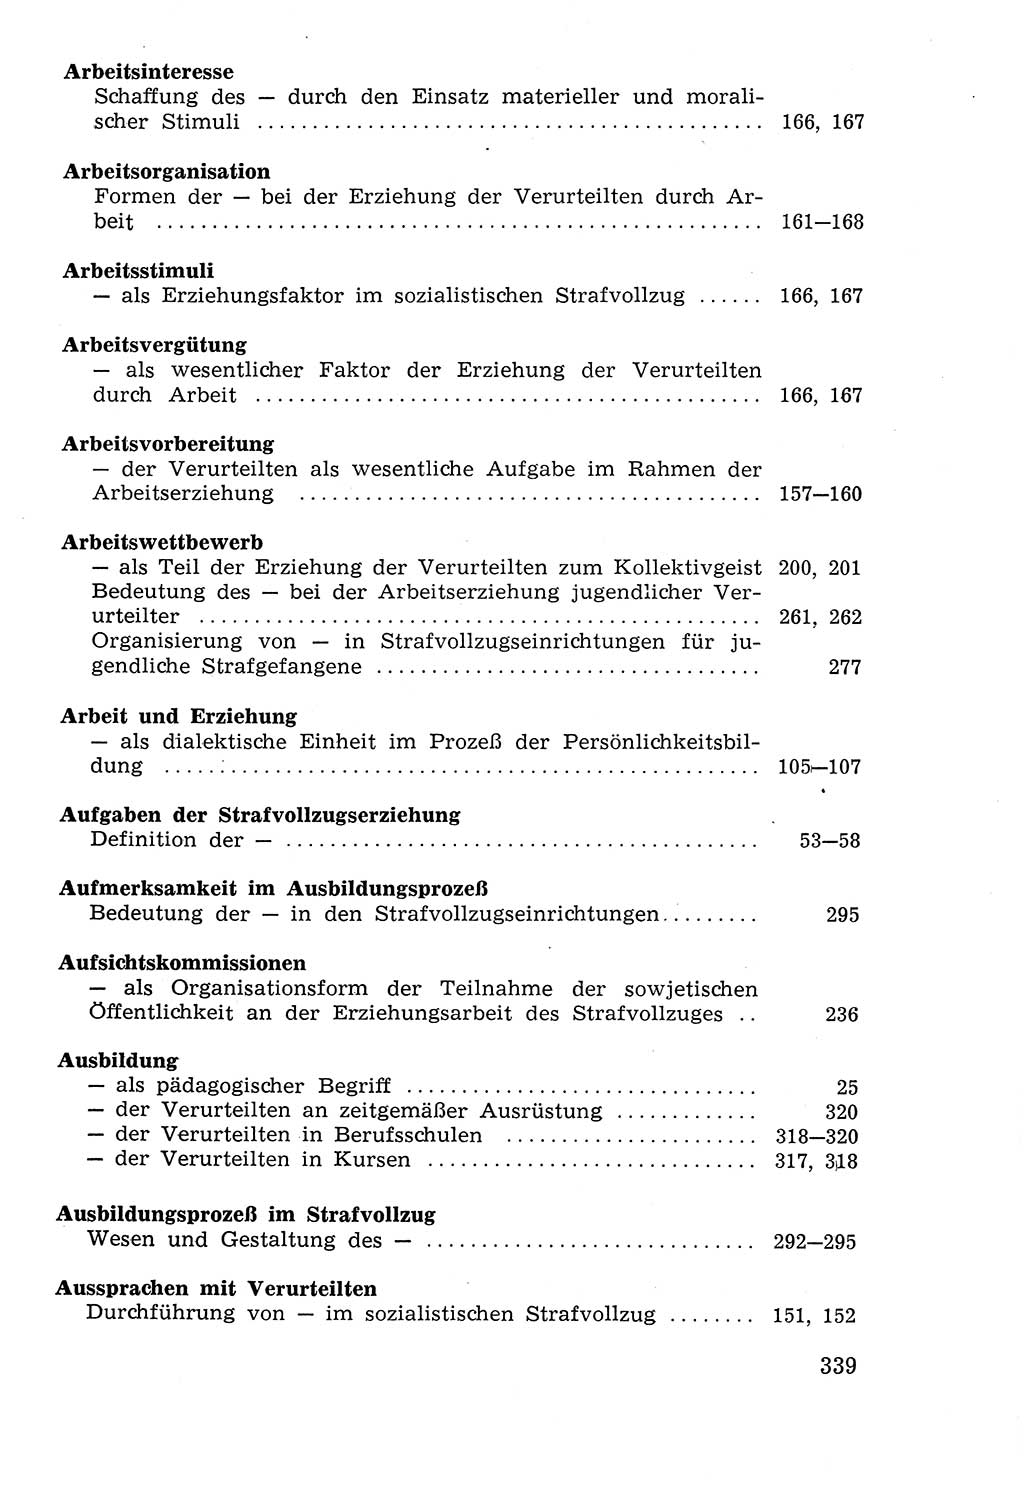 Lehrbuch der Strafvollzugspädagogik [Deutsche Demokratische Republik (DDR)] 1969, Seite 339 (Lb. SV-Pd. DDR 1969, S. 339)